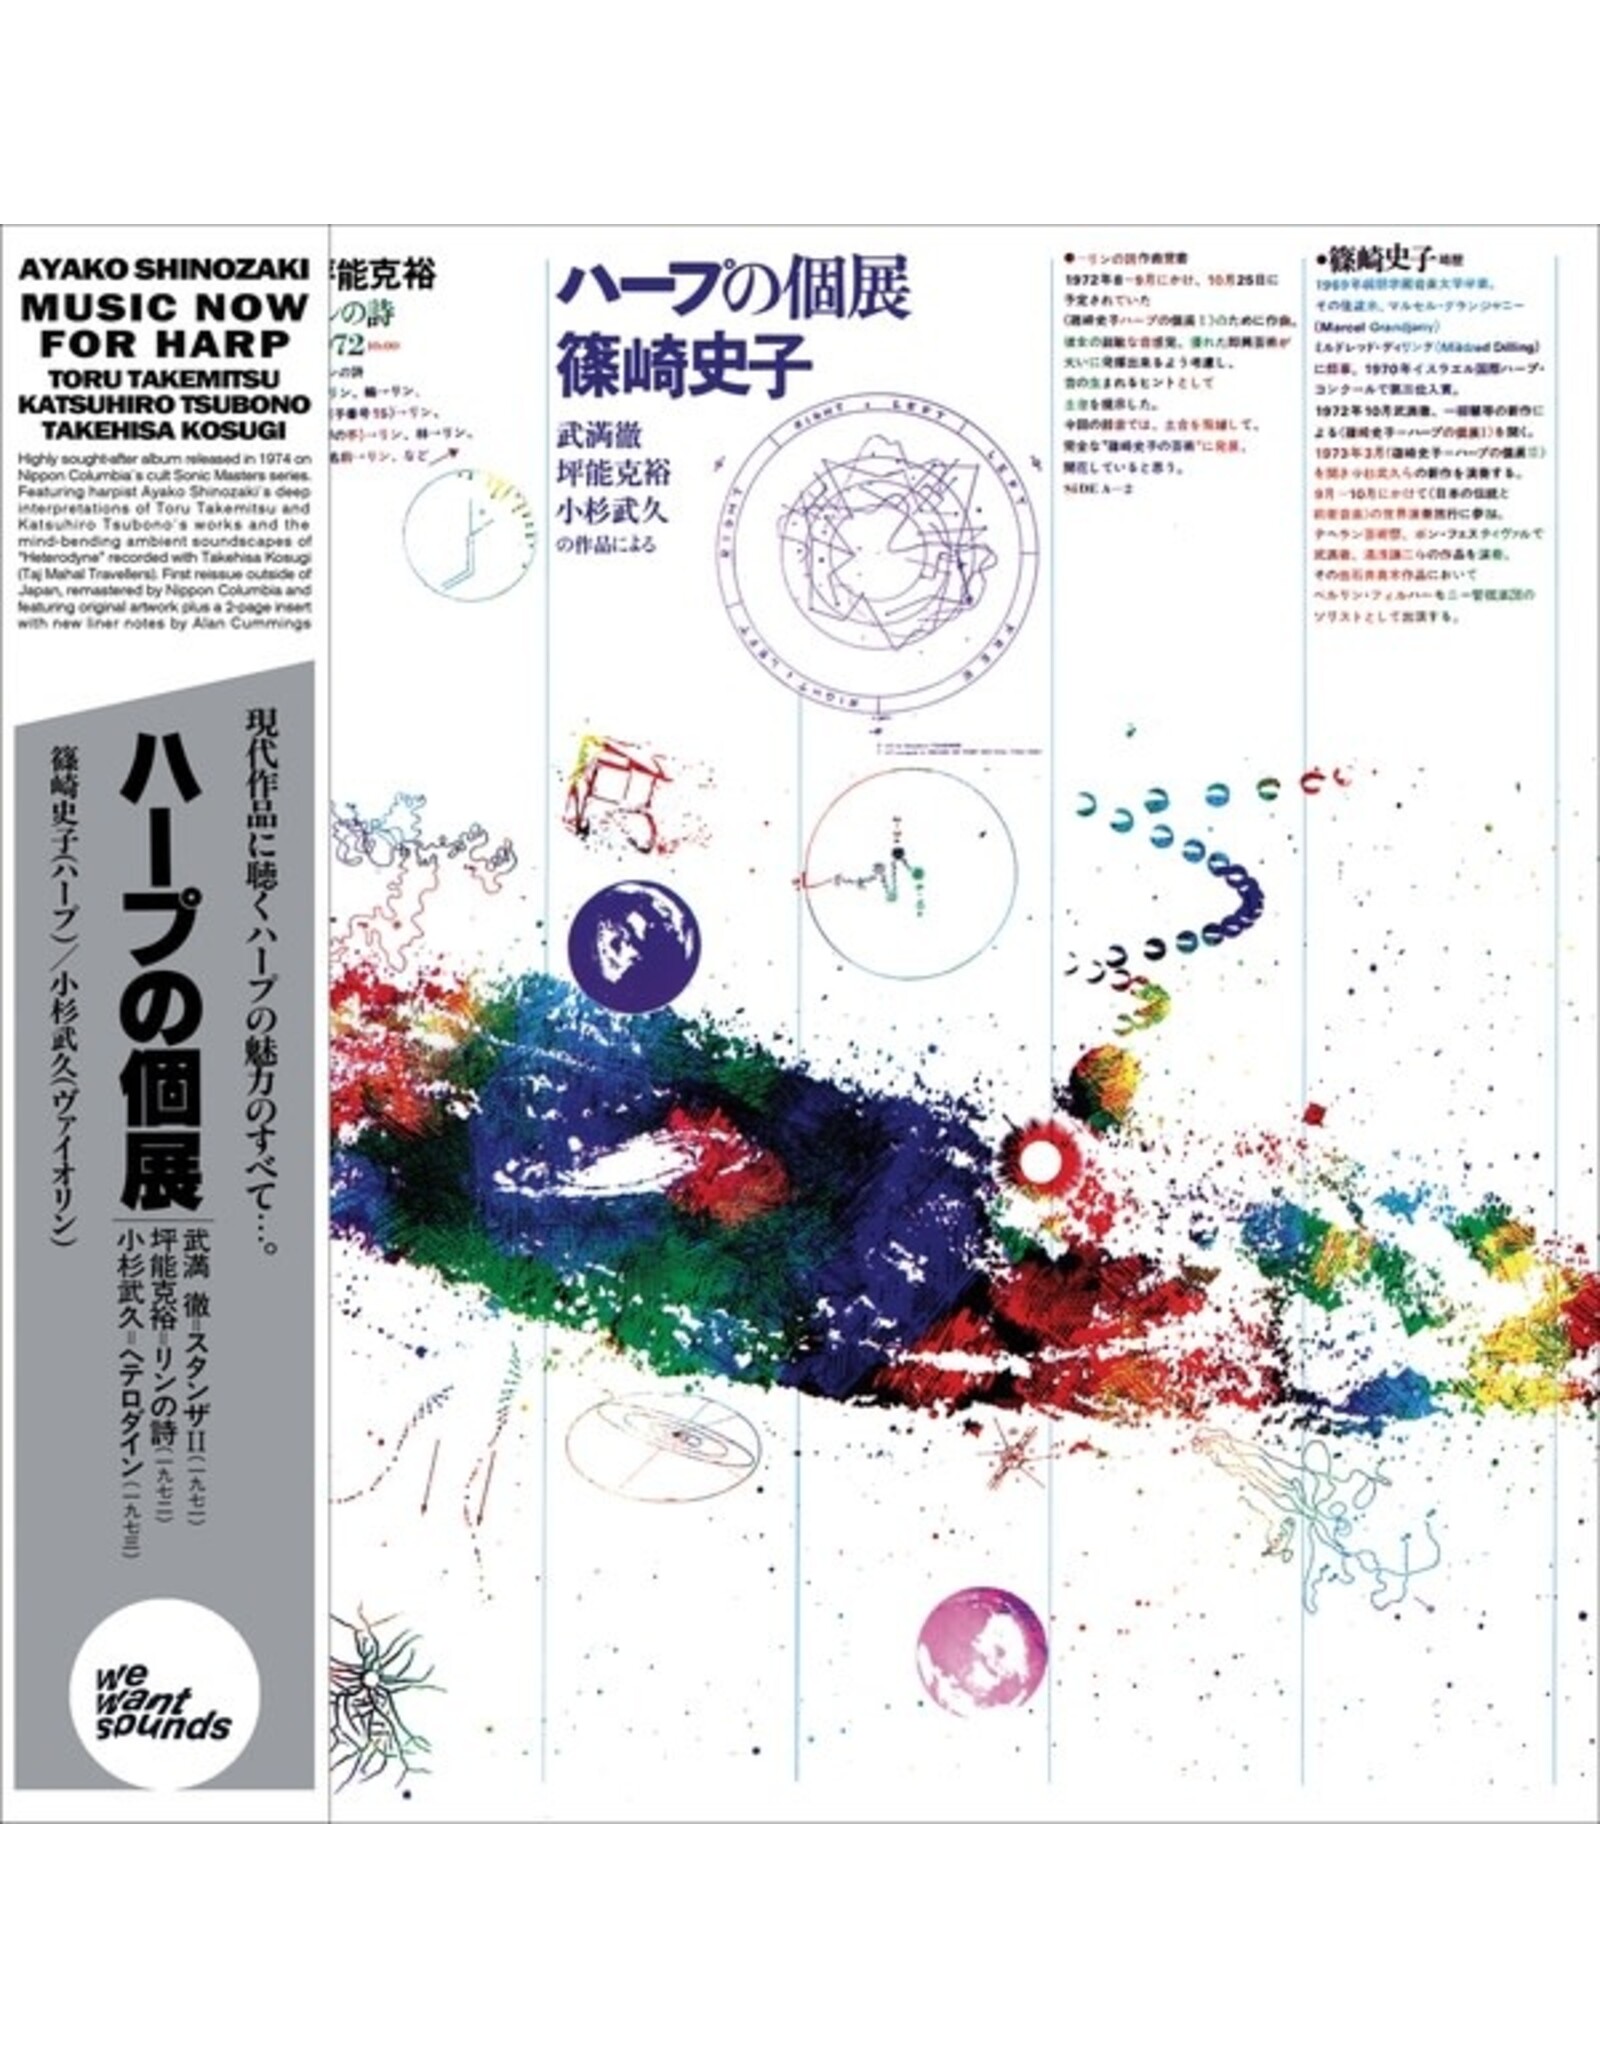 WeWantSound Shinozaki, Ayako: Music Now For Harp LP